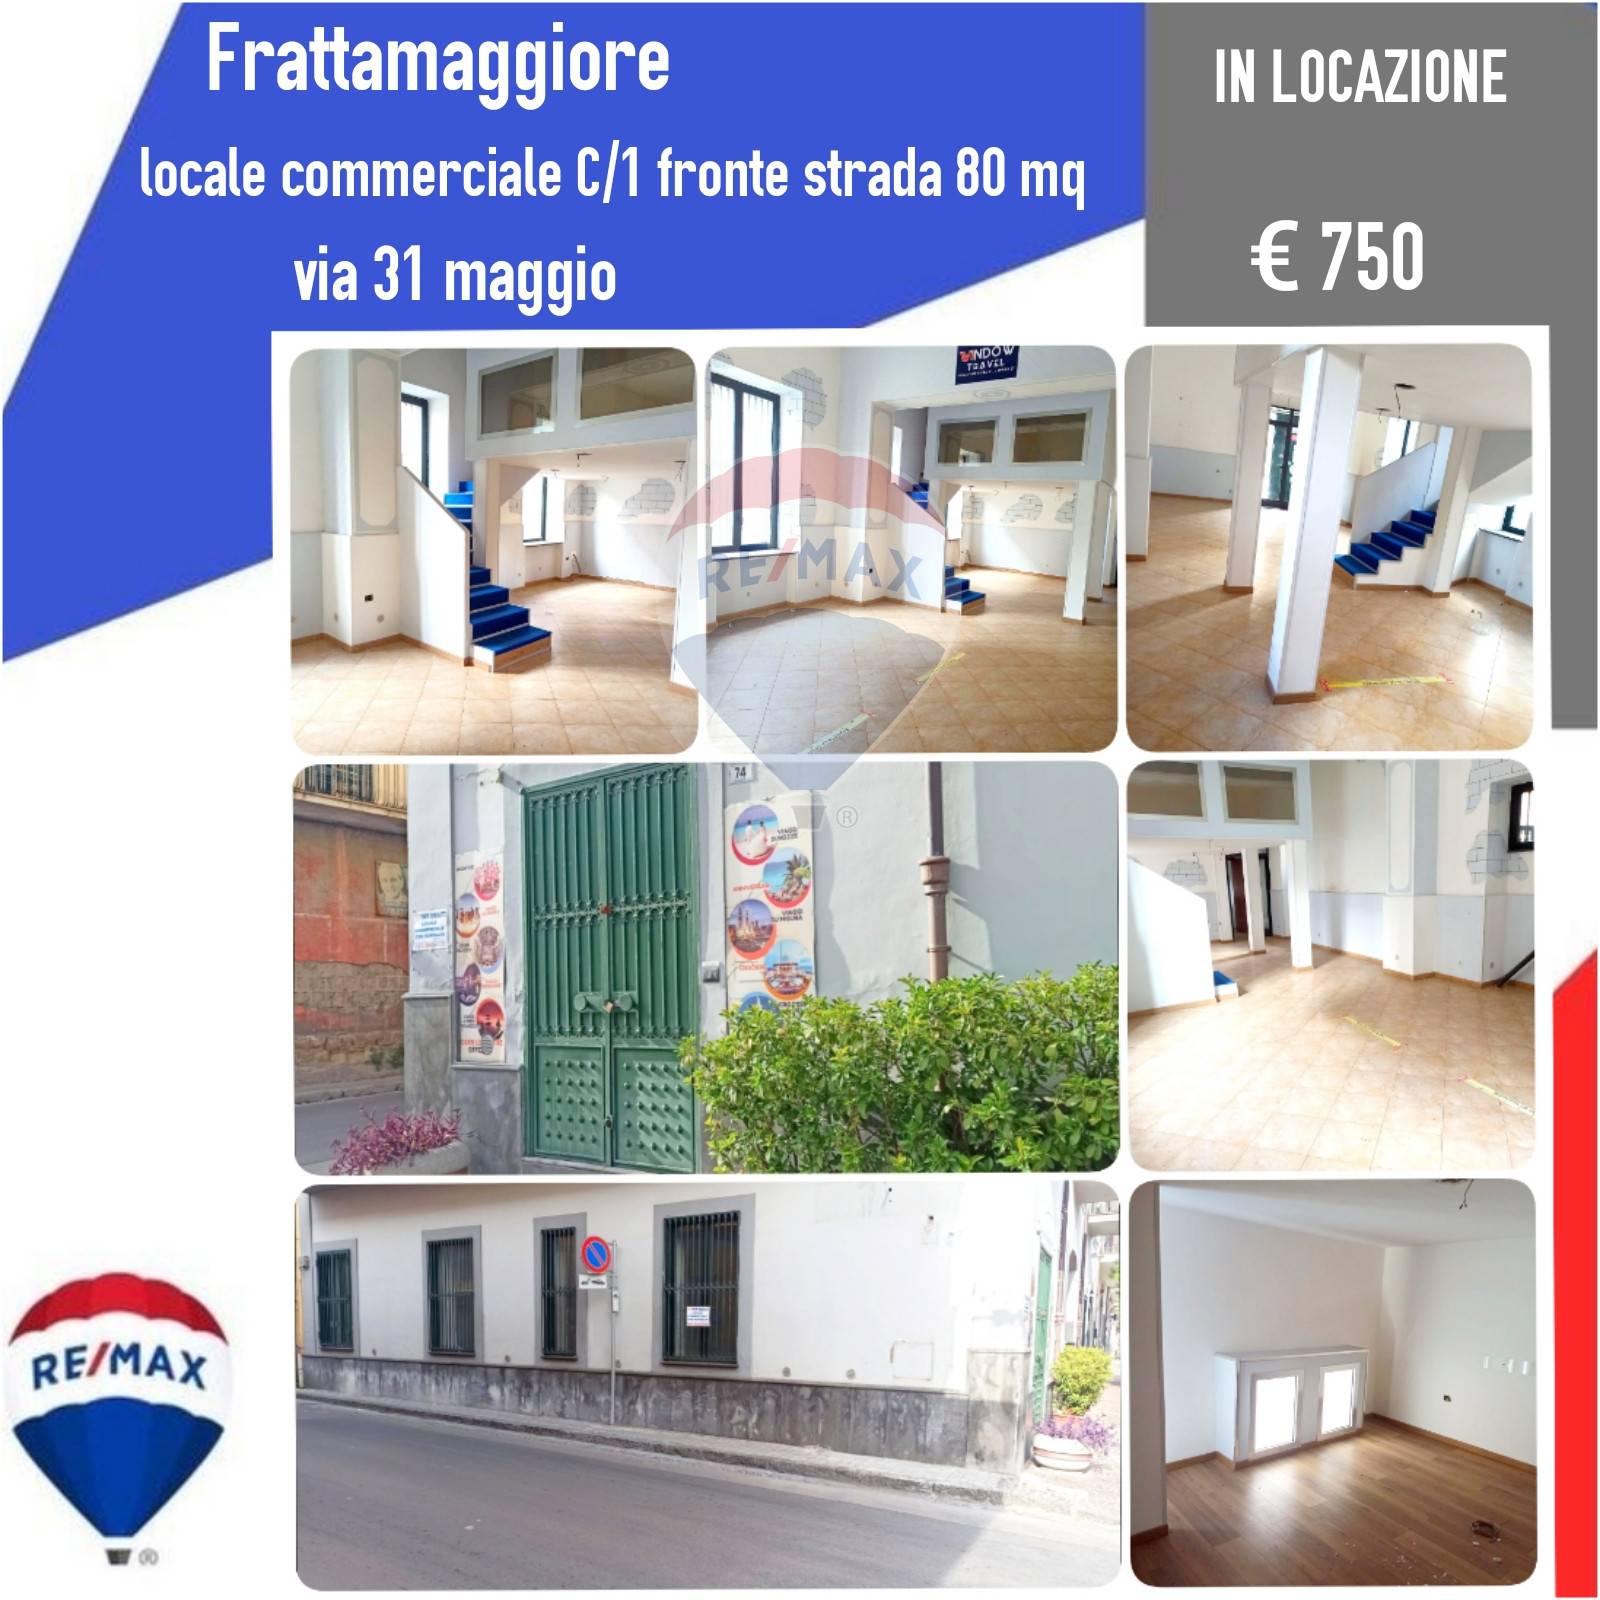 Negozio / Locale in affitto a Frattamaggiore, 9999 locali, prezzo € 750 | CambioCasa.it